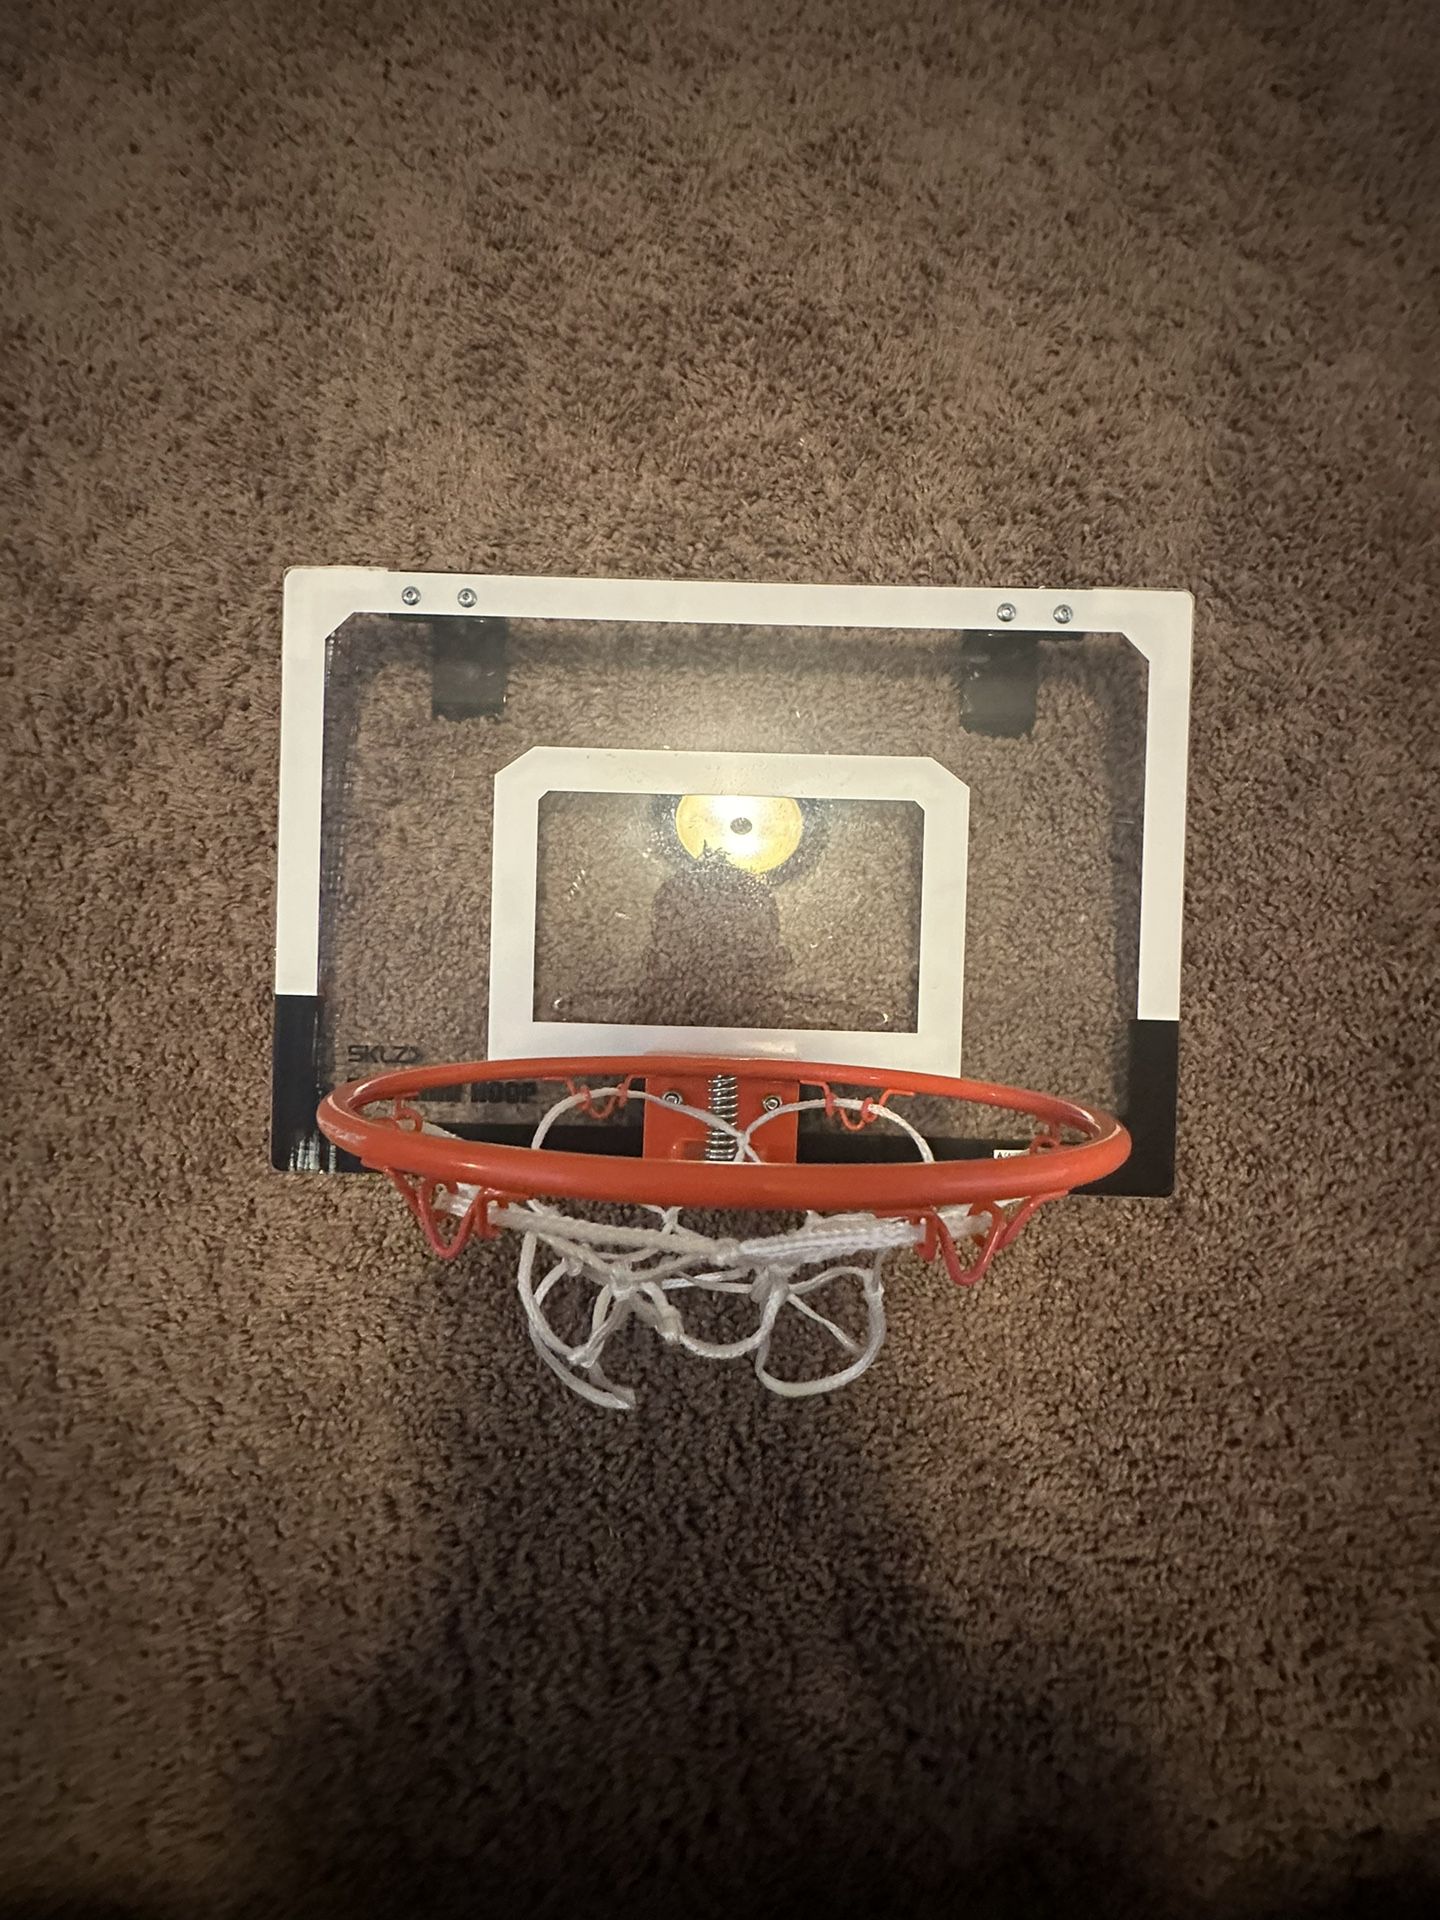 Over The Door Basketball Hoop With Ball